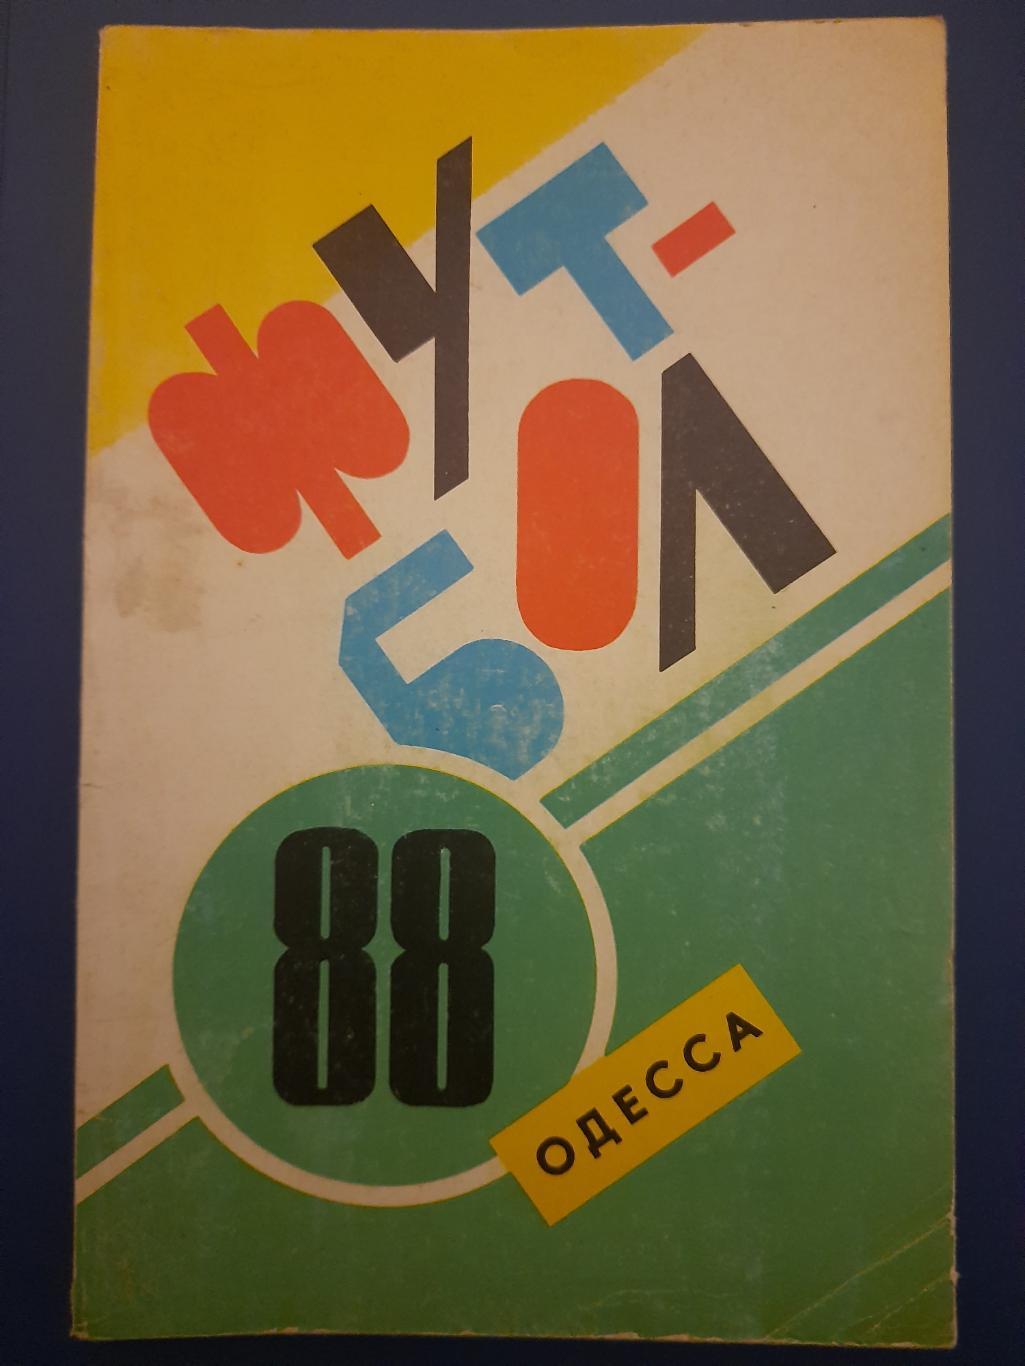 календарь-справочник Футбол 1988, Одесса.